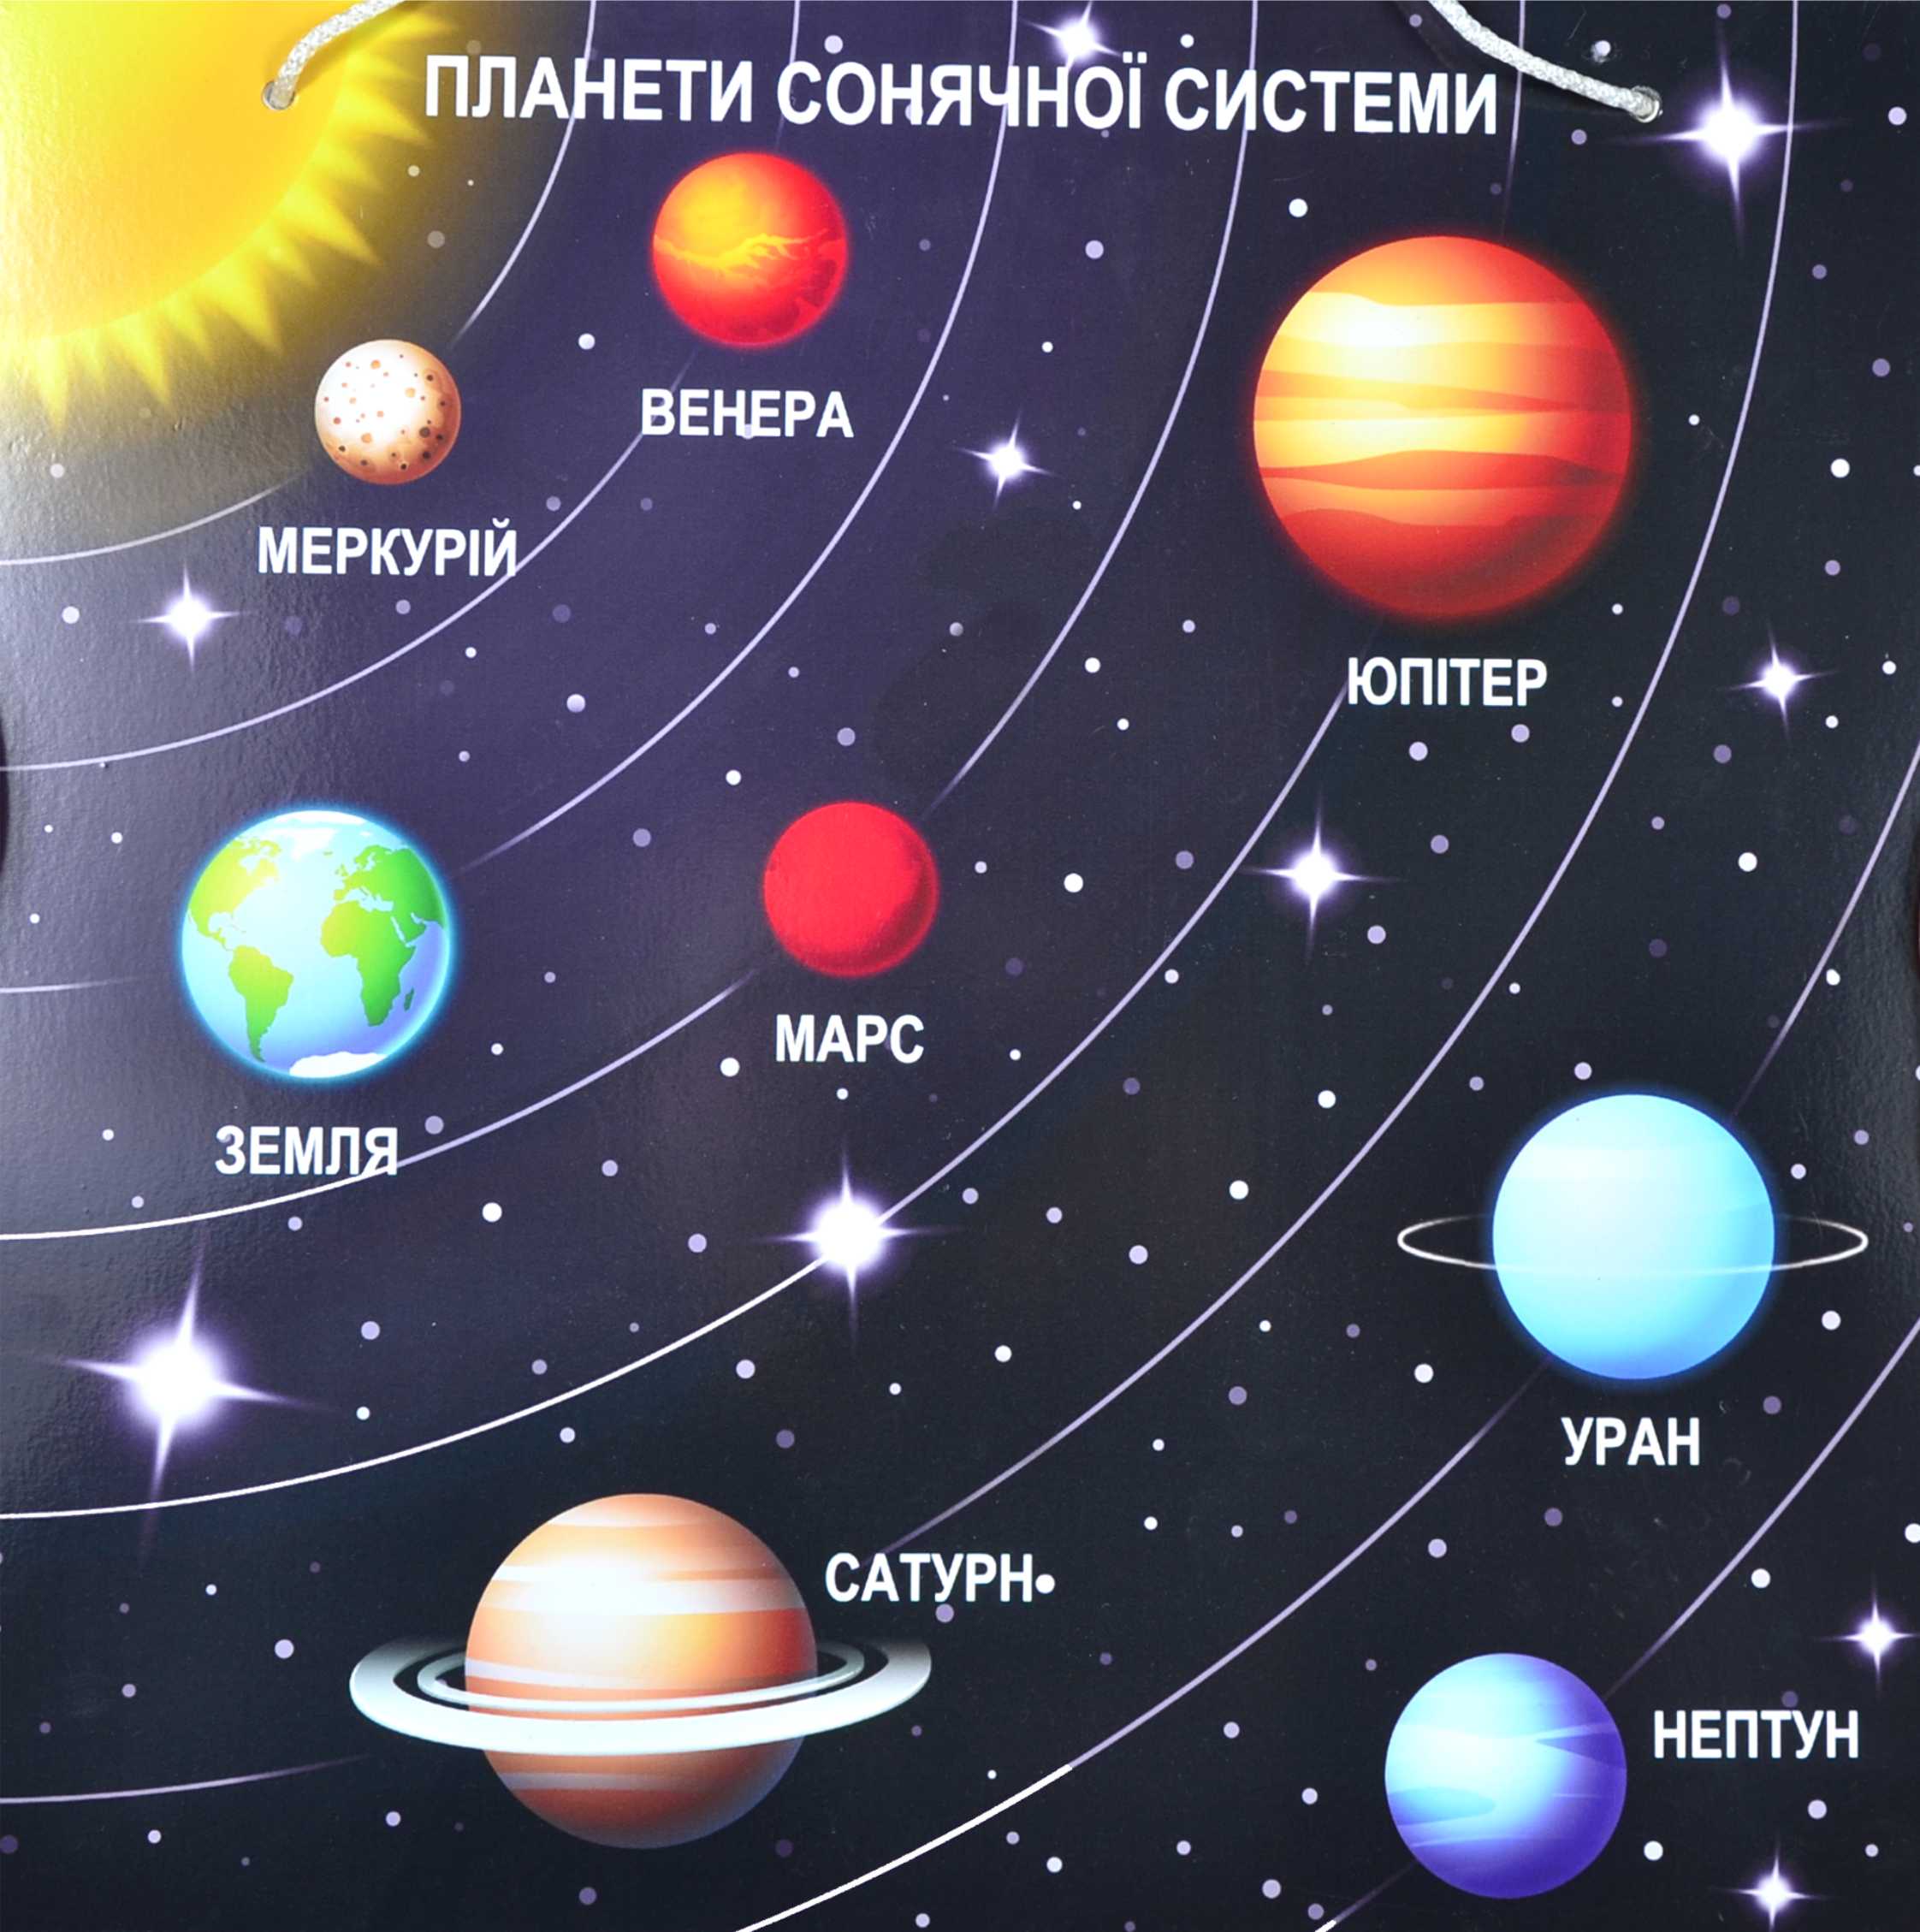 Солнечная система детям дошкольного. Солнечная система расположение плане. Солнечная система с названиями планет по порядку от солнца. Планеты солнечной системы по порядку от солнца с названиями для детей. Расположение планет солнечной системы.